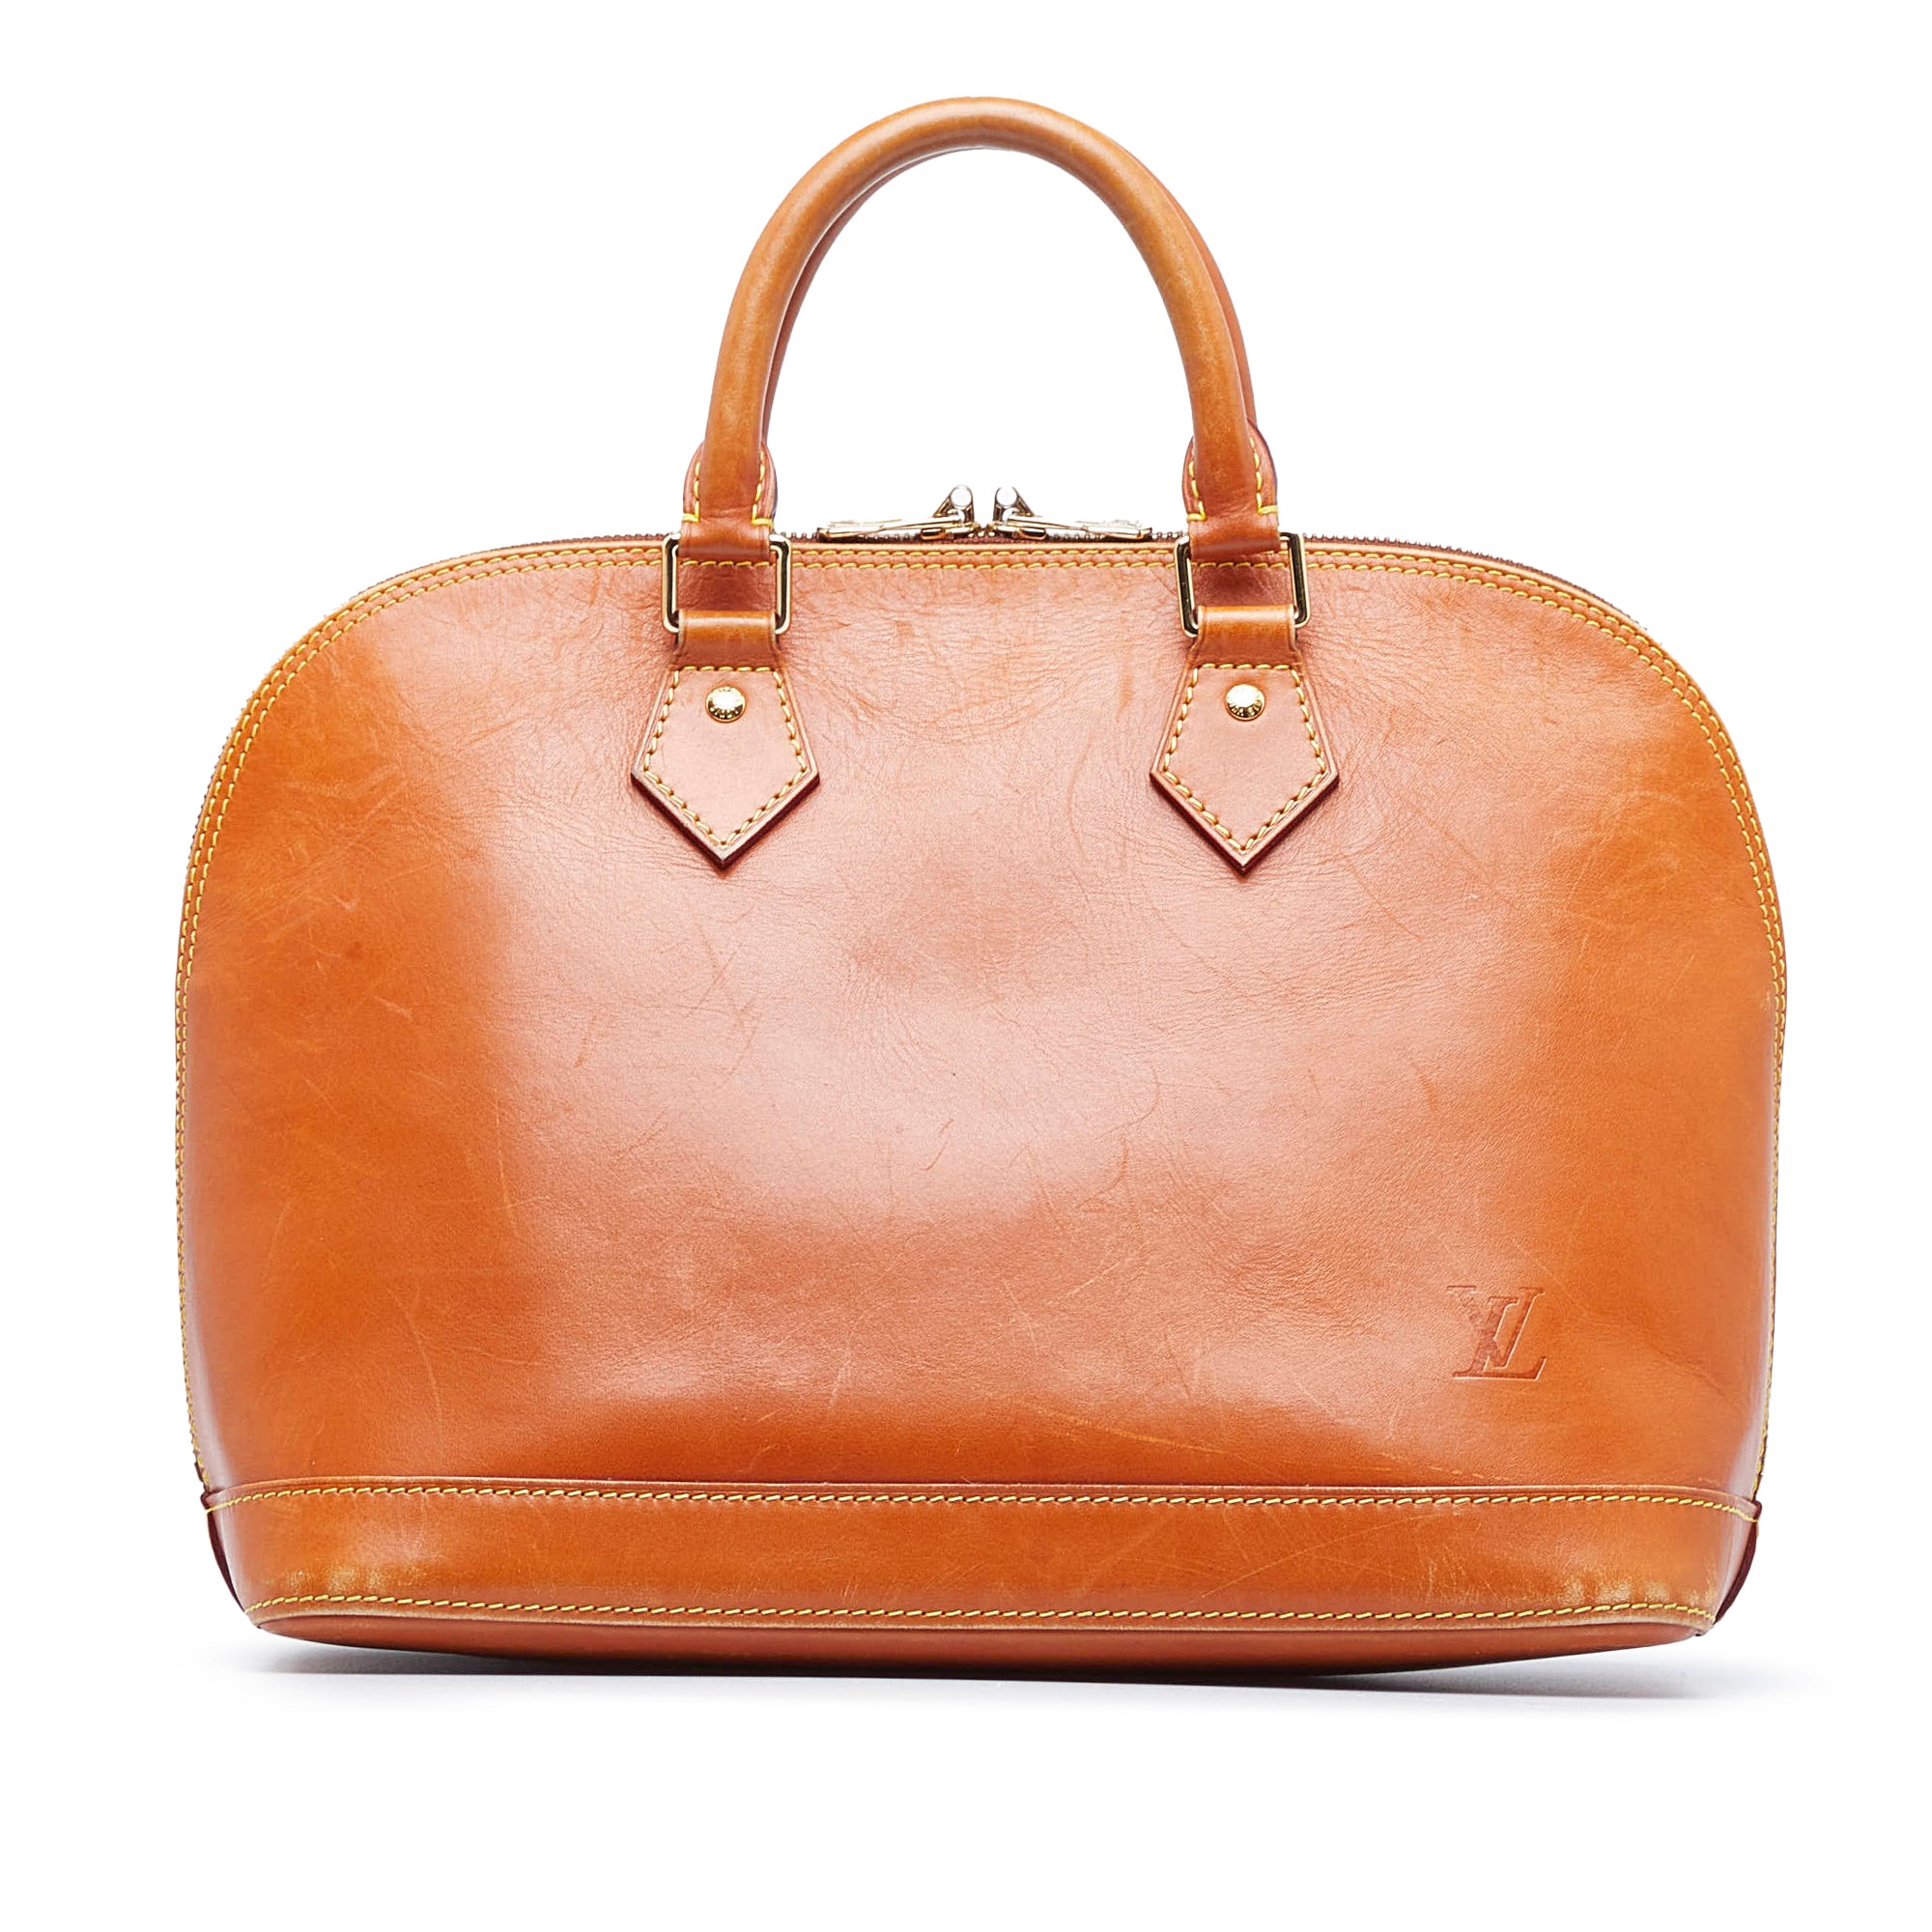 Pre-owned Alma Bb Leather Handbag In Orange